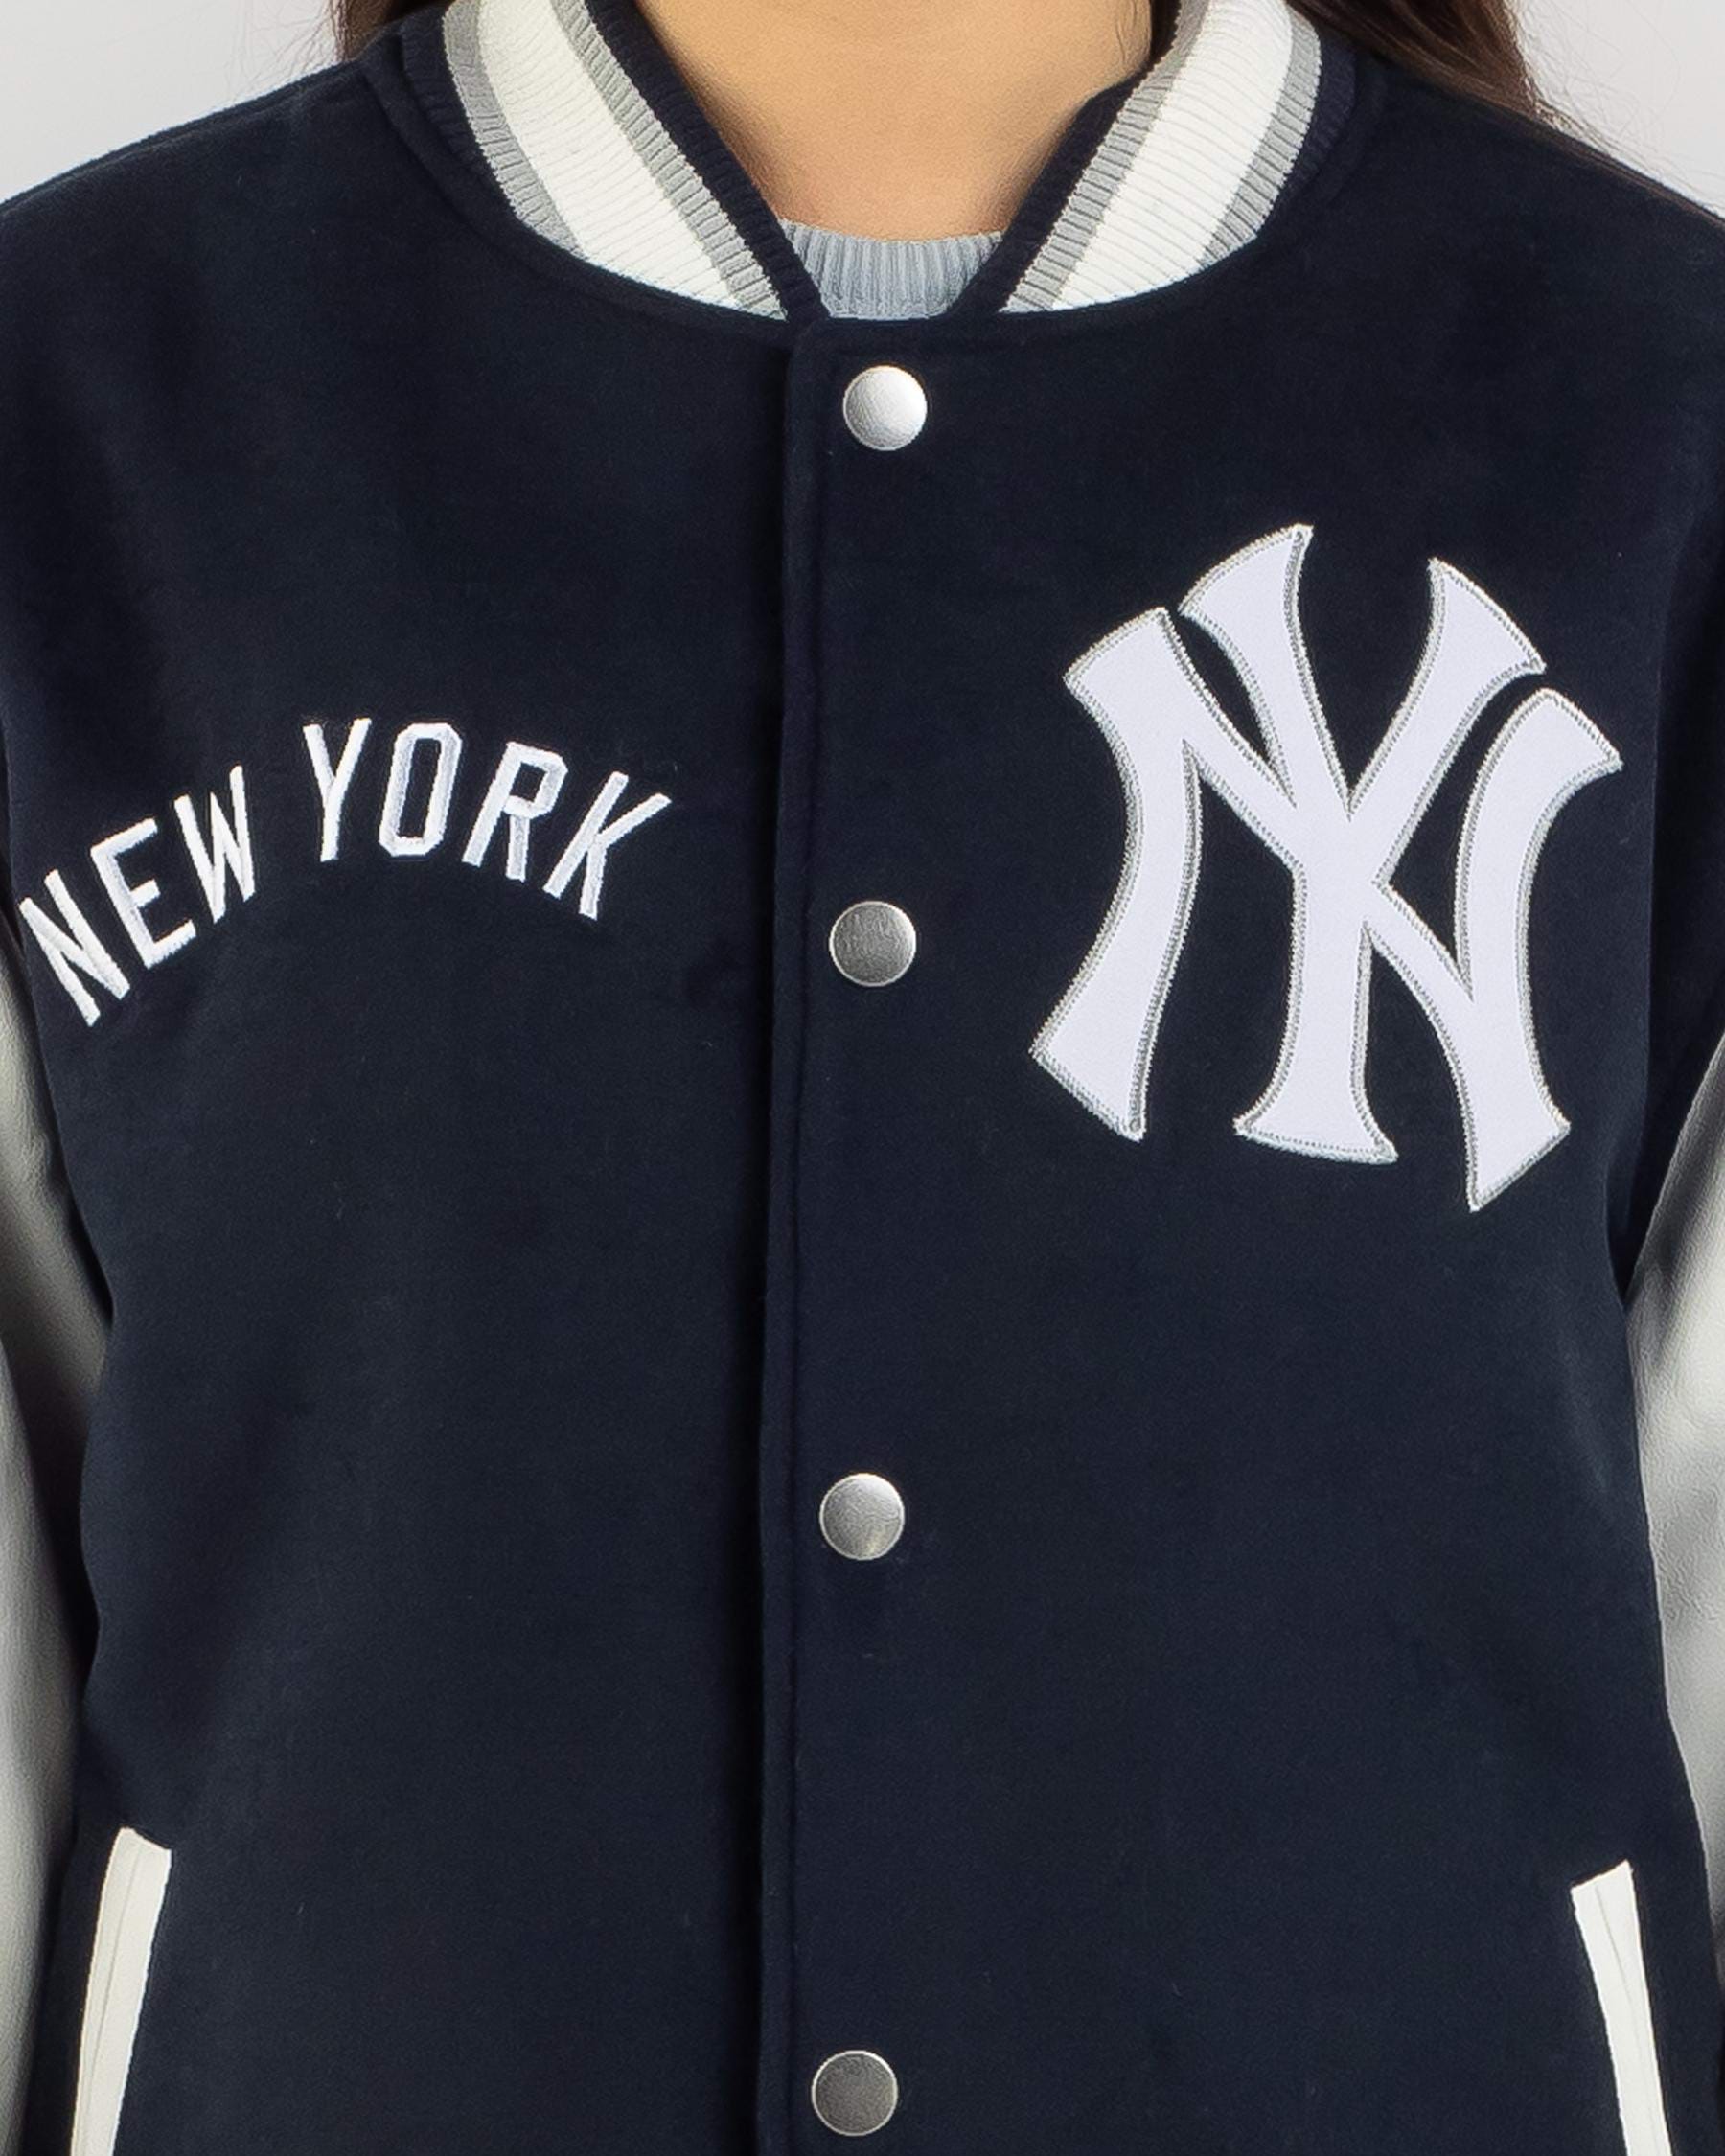 Majestic NY Yankees Jacket, Size L